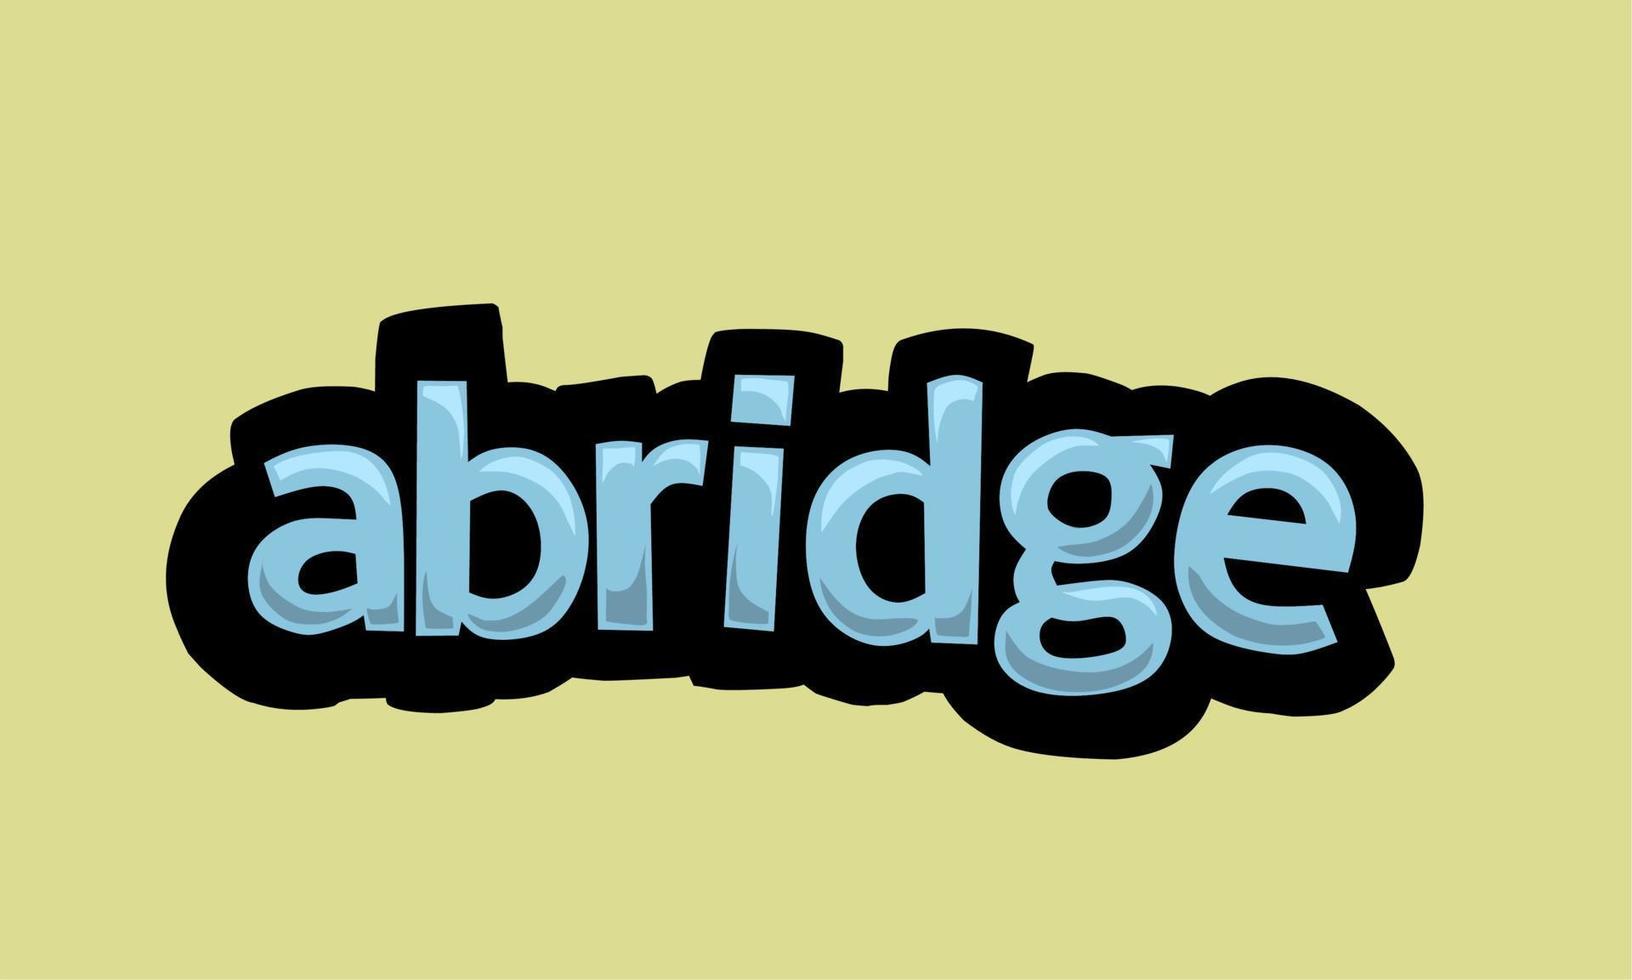 Abridge schreiben Vektordesign auf gelbem Hintergrund vektor